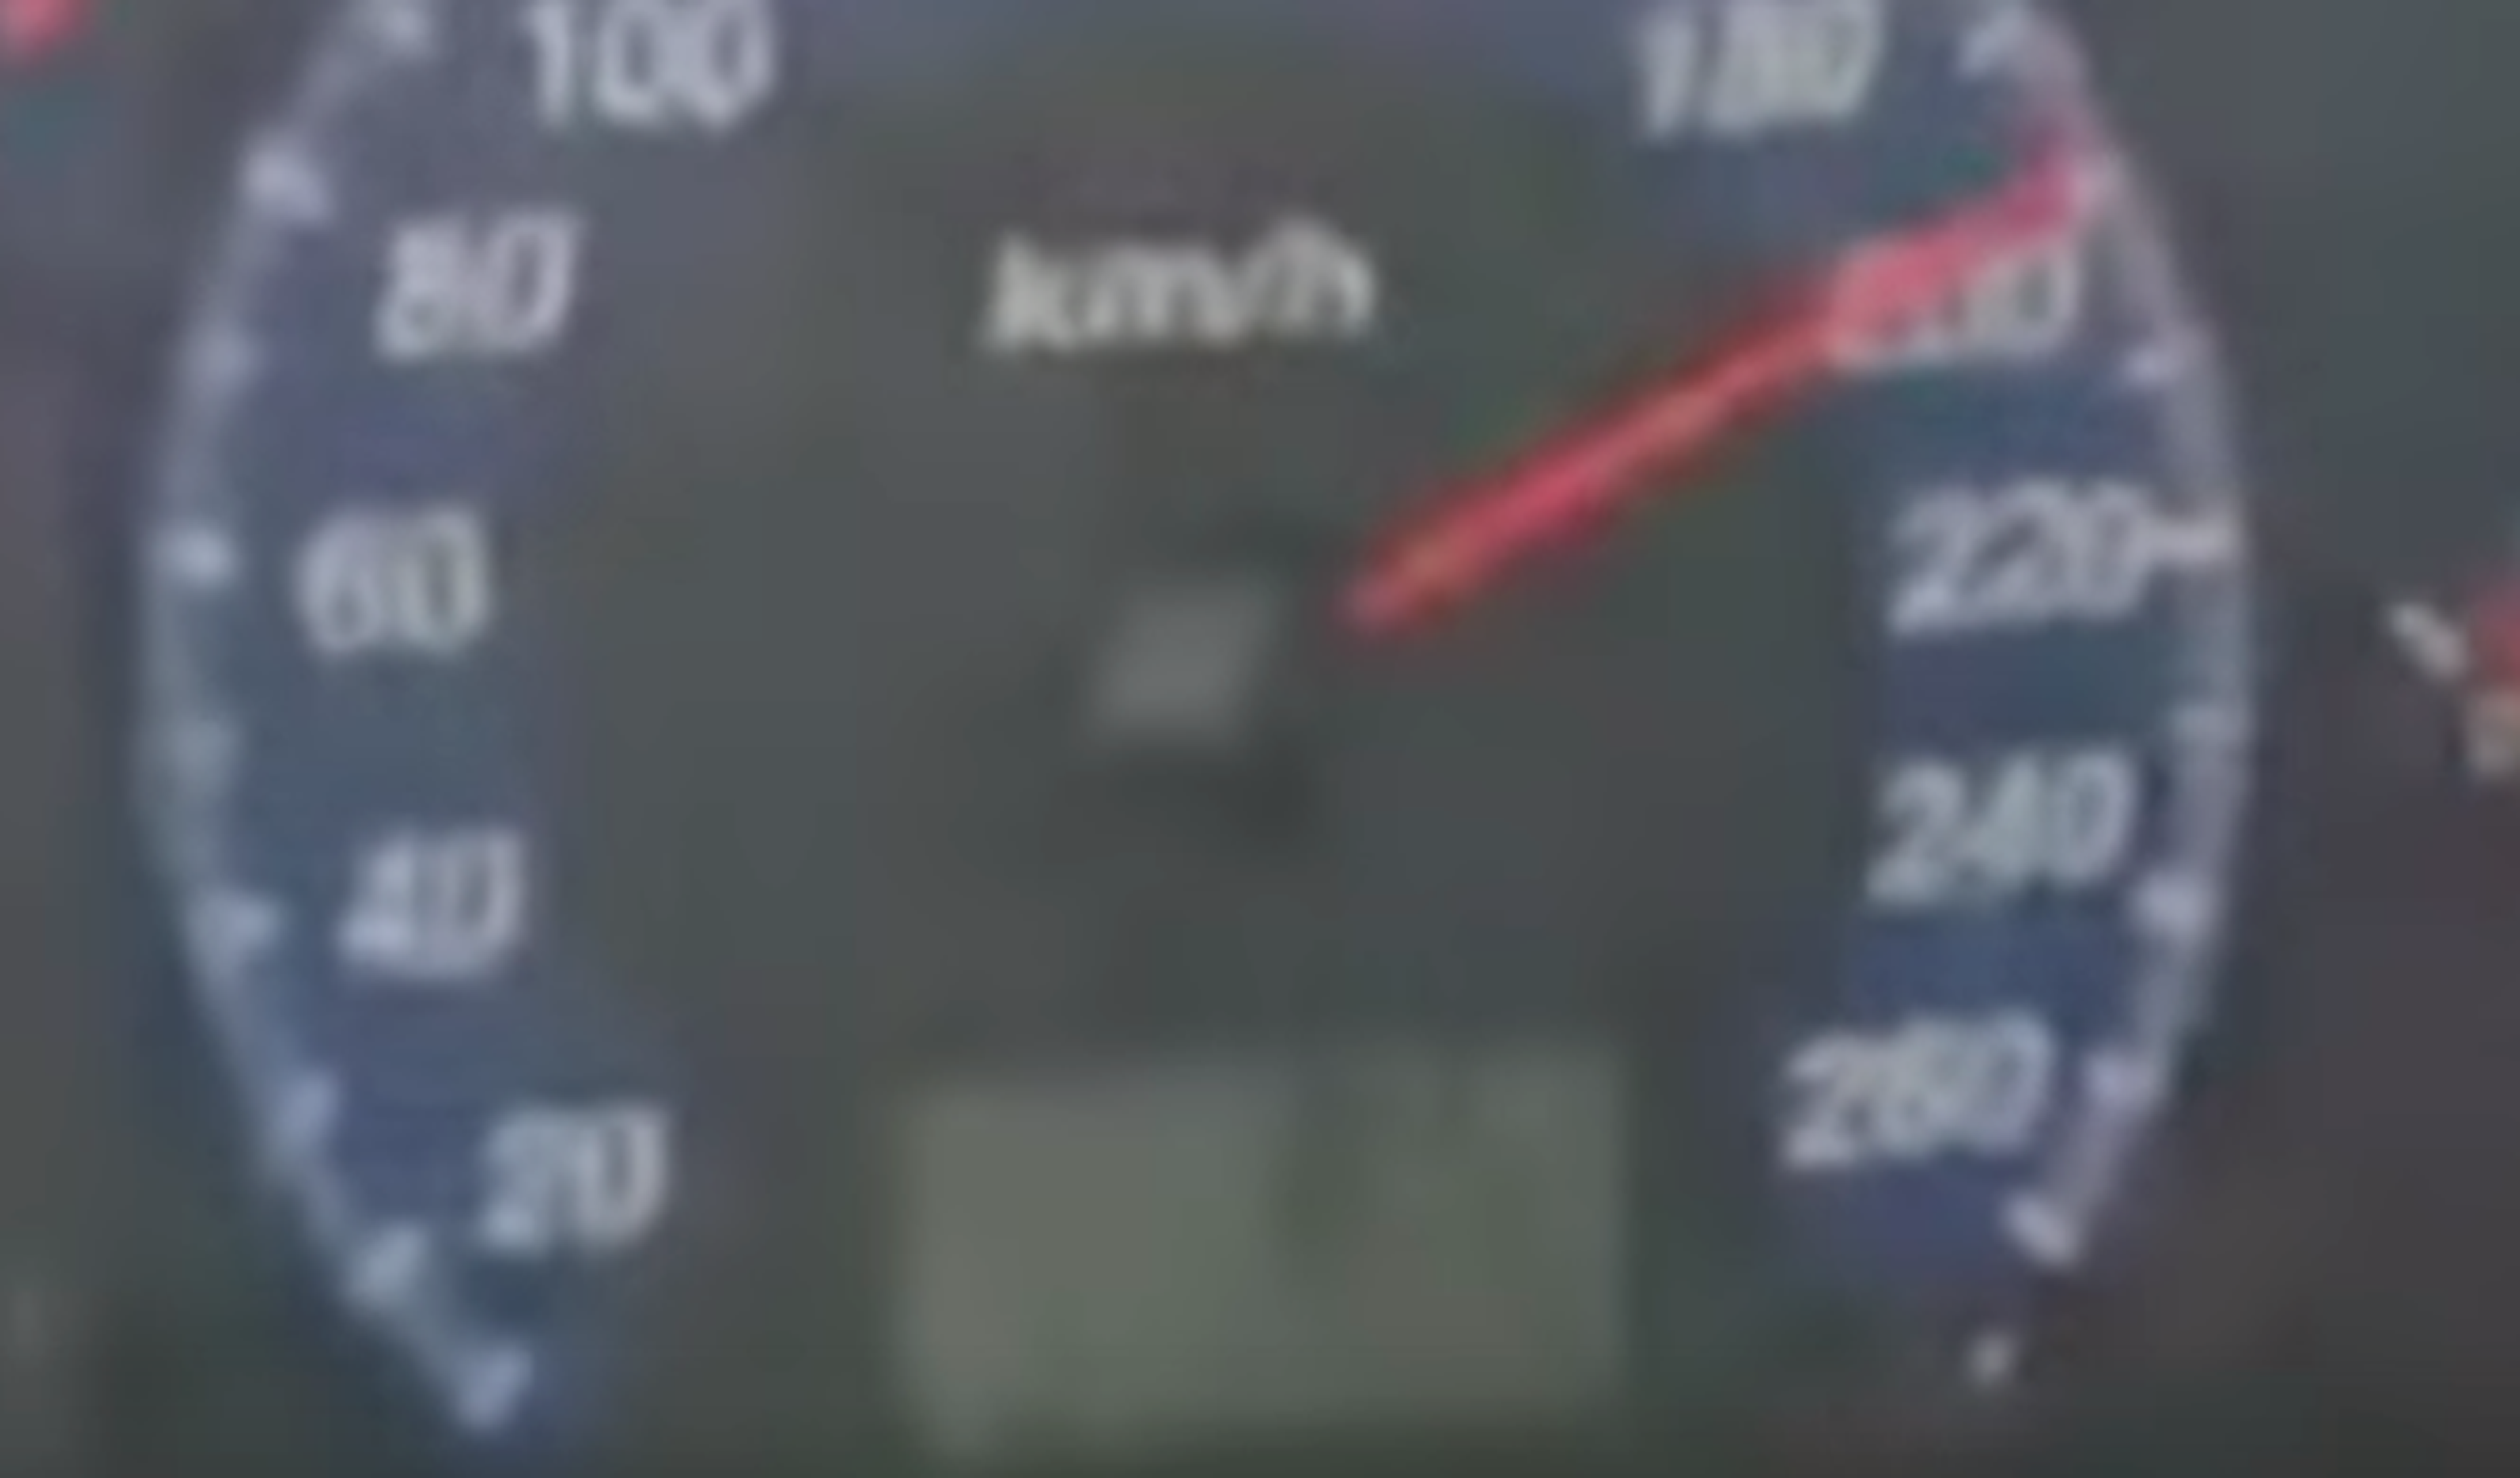 Imputado por grabar un vídeo en el que circula a 200 km/h